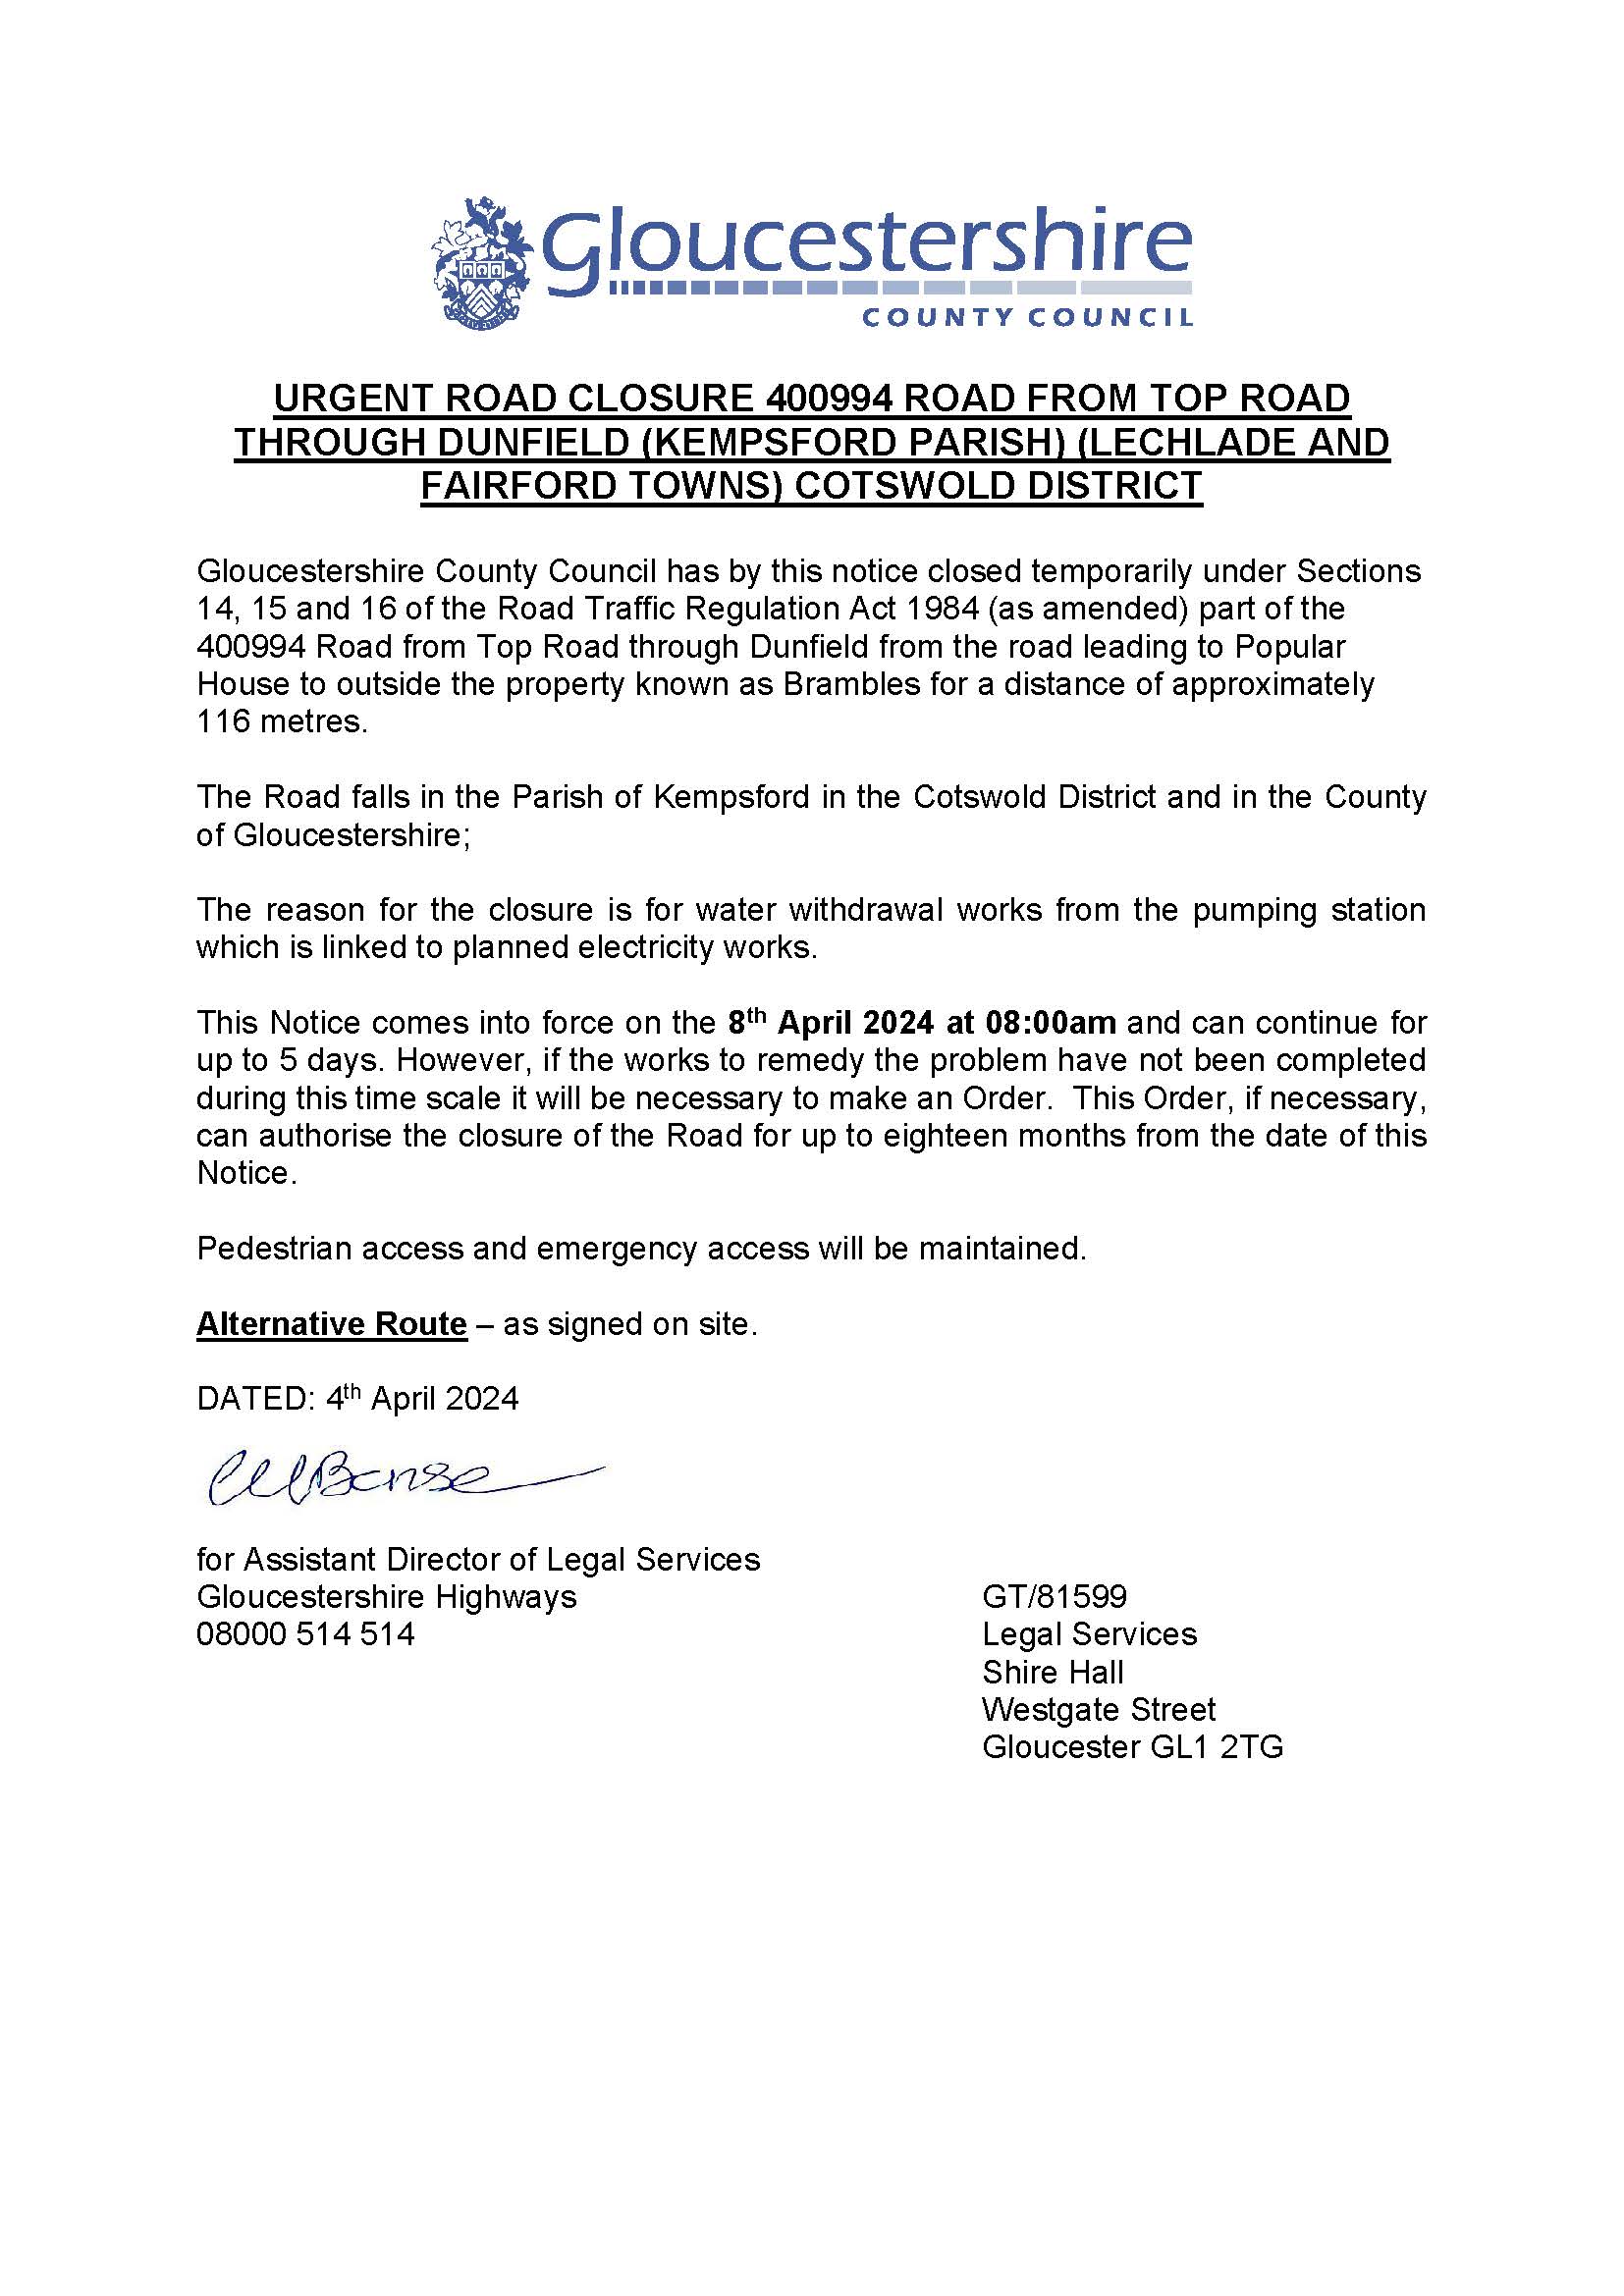 Urgent Road Closure at Dunfield